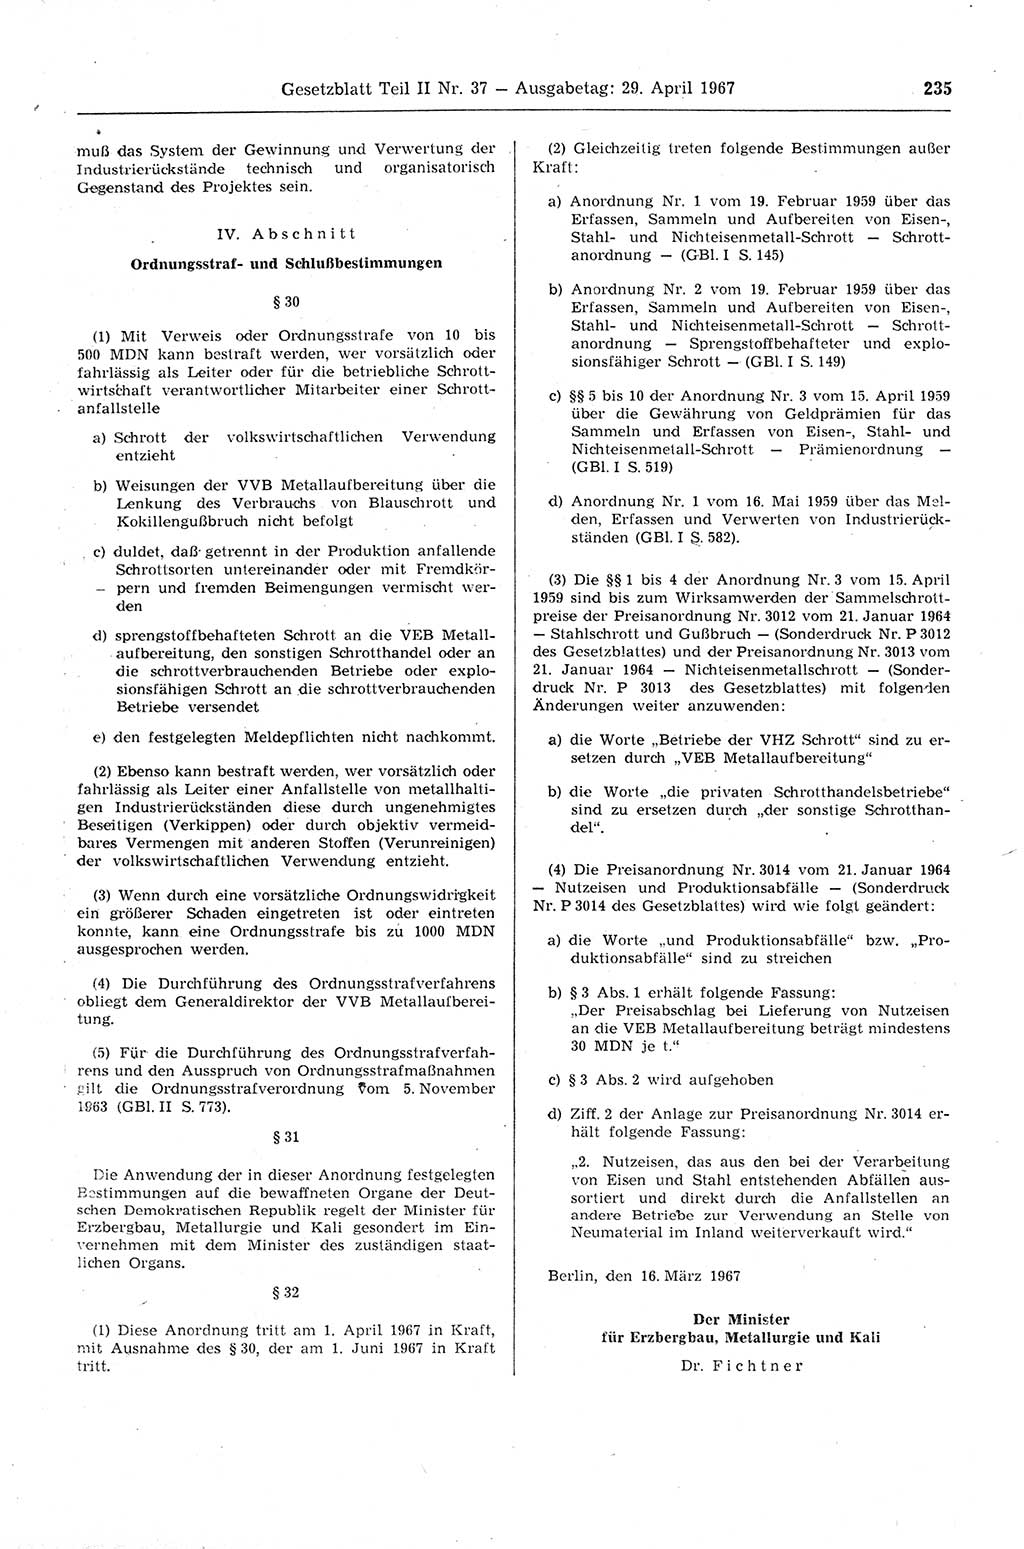 Gesetzblatt (GBl.) der Deutschen Demokratischen Republik (DDR) Teil ⅠⅠ 1967, Seite 235 (GBl. DDR ⅠⅠ 1967, S. 235)